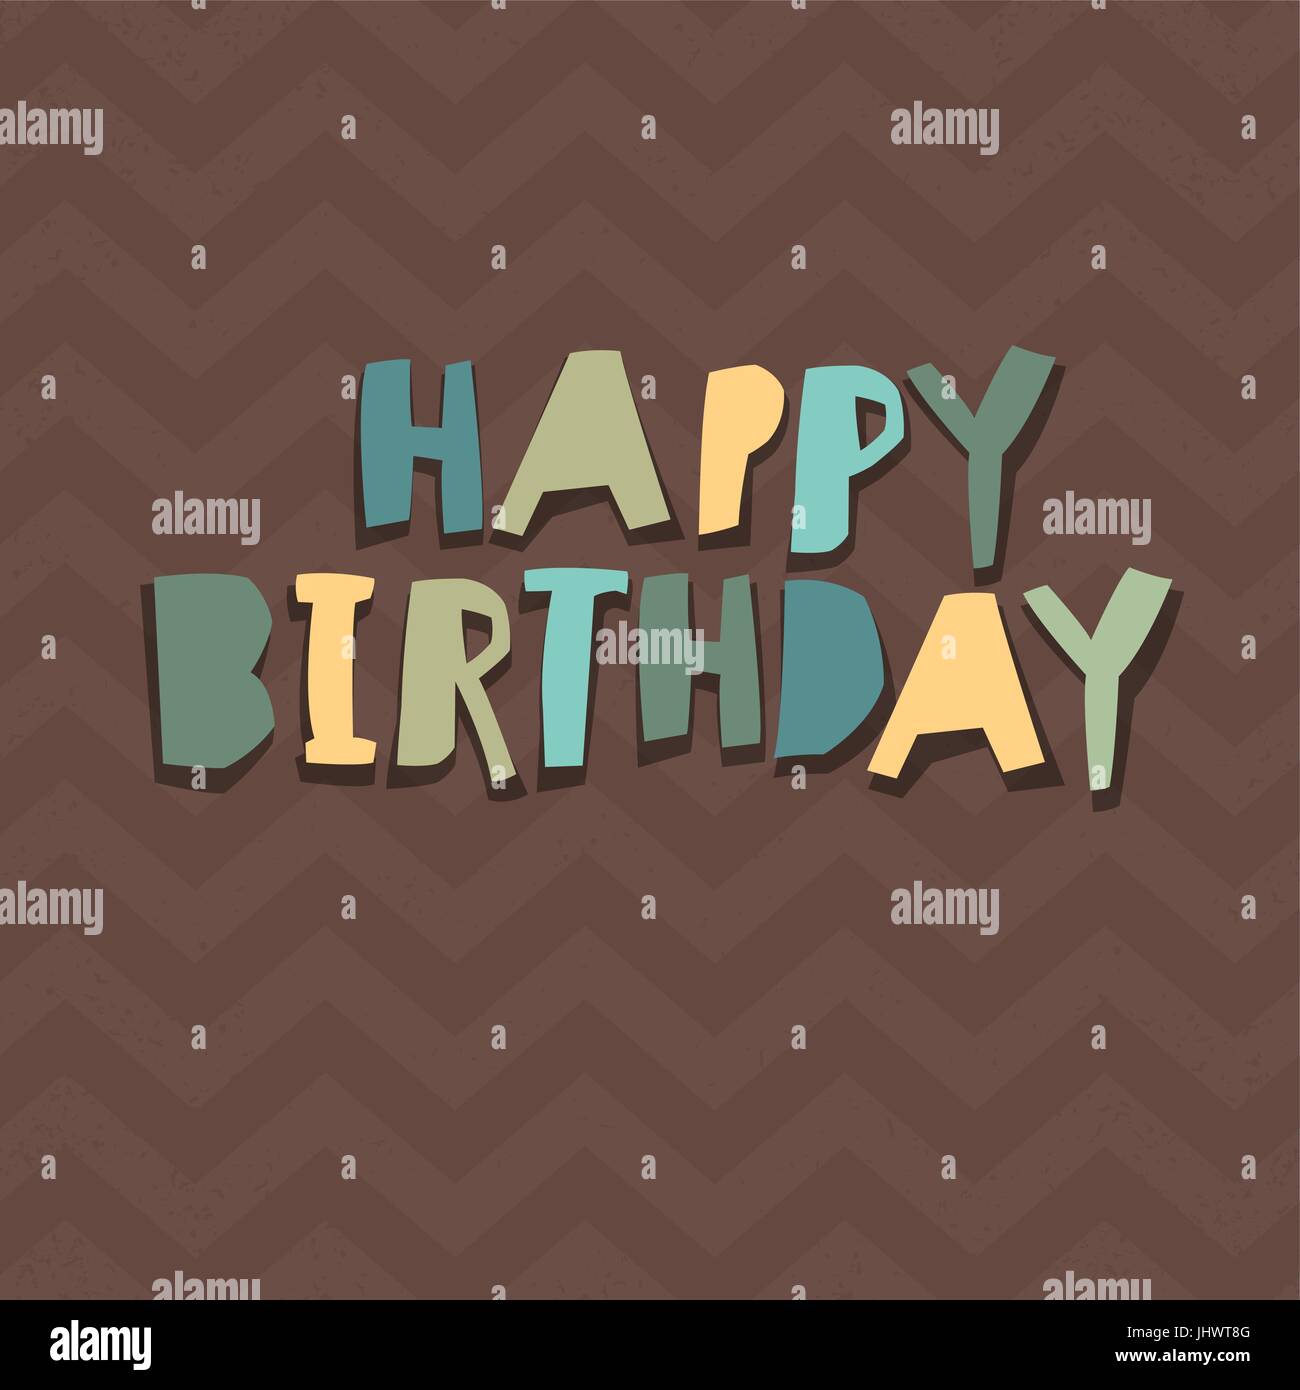 Happy Birthday Card Design. Scherenschnitt Alphabet. Chevron-Muster, Schokolade Hintergrundfarben. Einfach bearbeitete Farbe der Buchstaben. Großbuchstaben. Stock Vektor